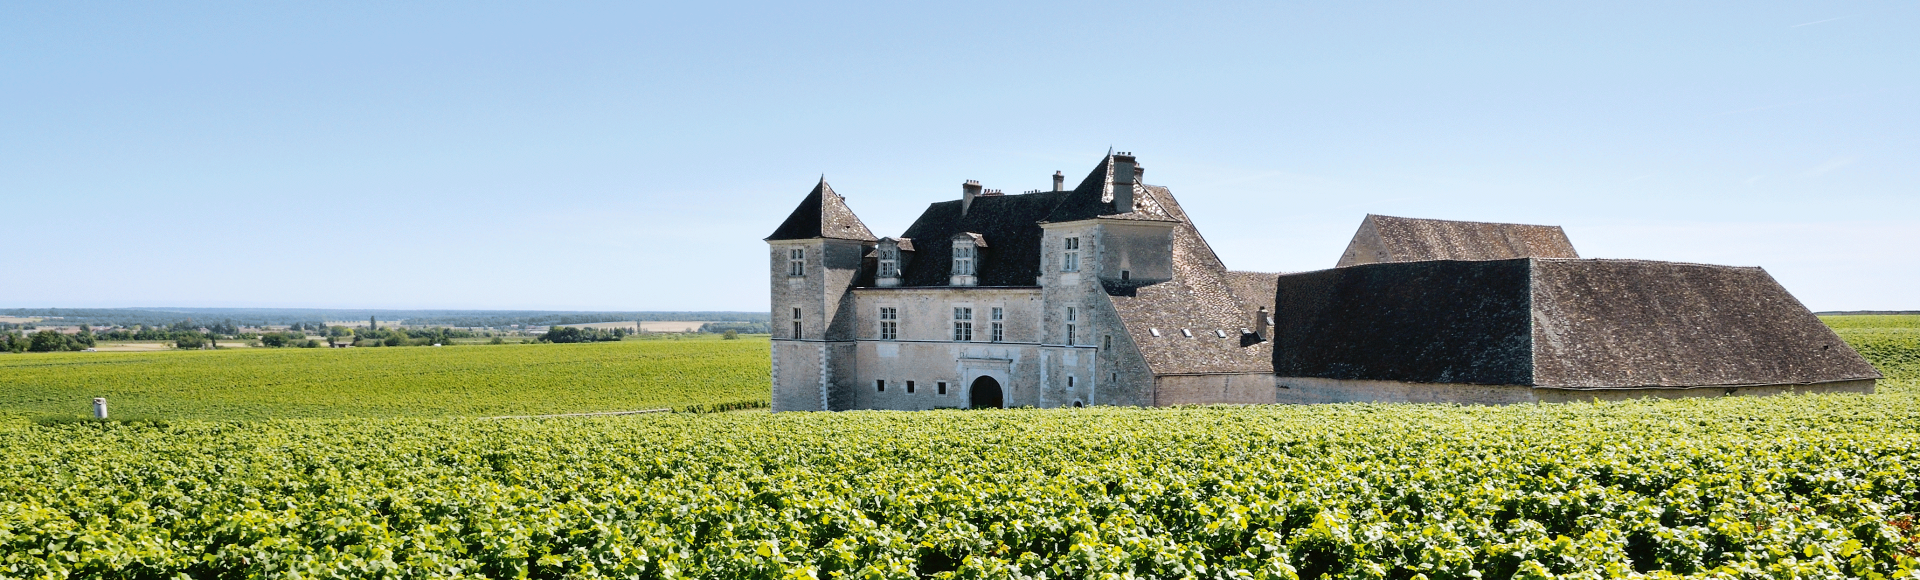 Idyllisch von Weinbergen umgeben liegt das Château du Clos de Vougeot, Frankreich, © Gilles Oster - Fotolia.com